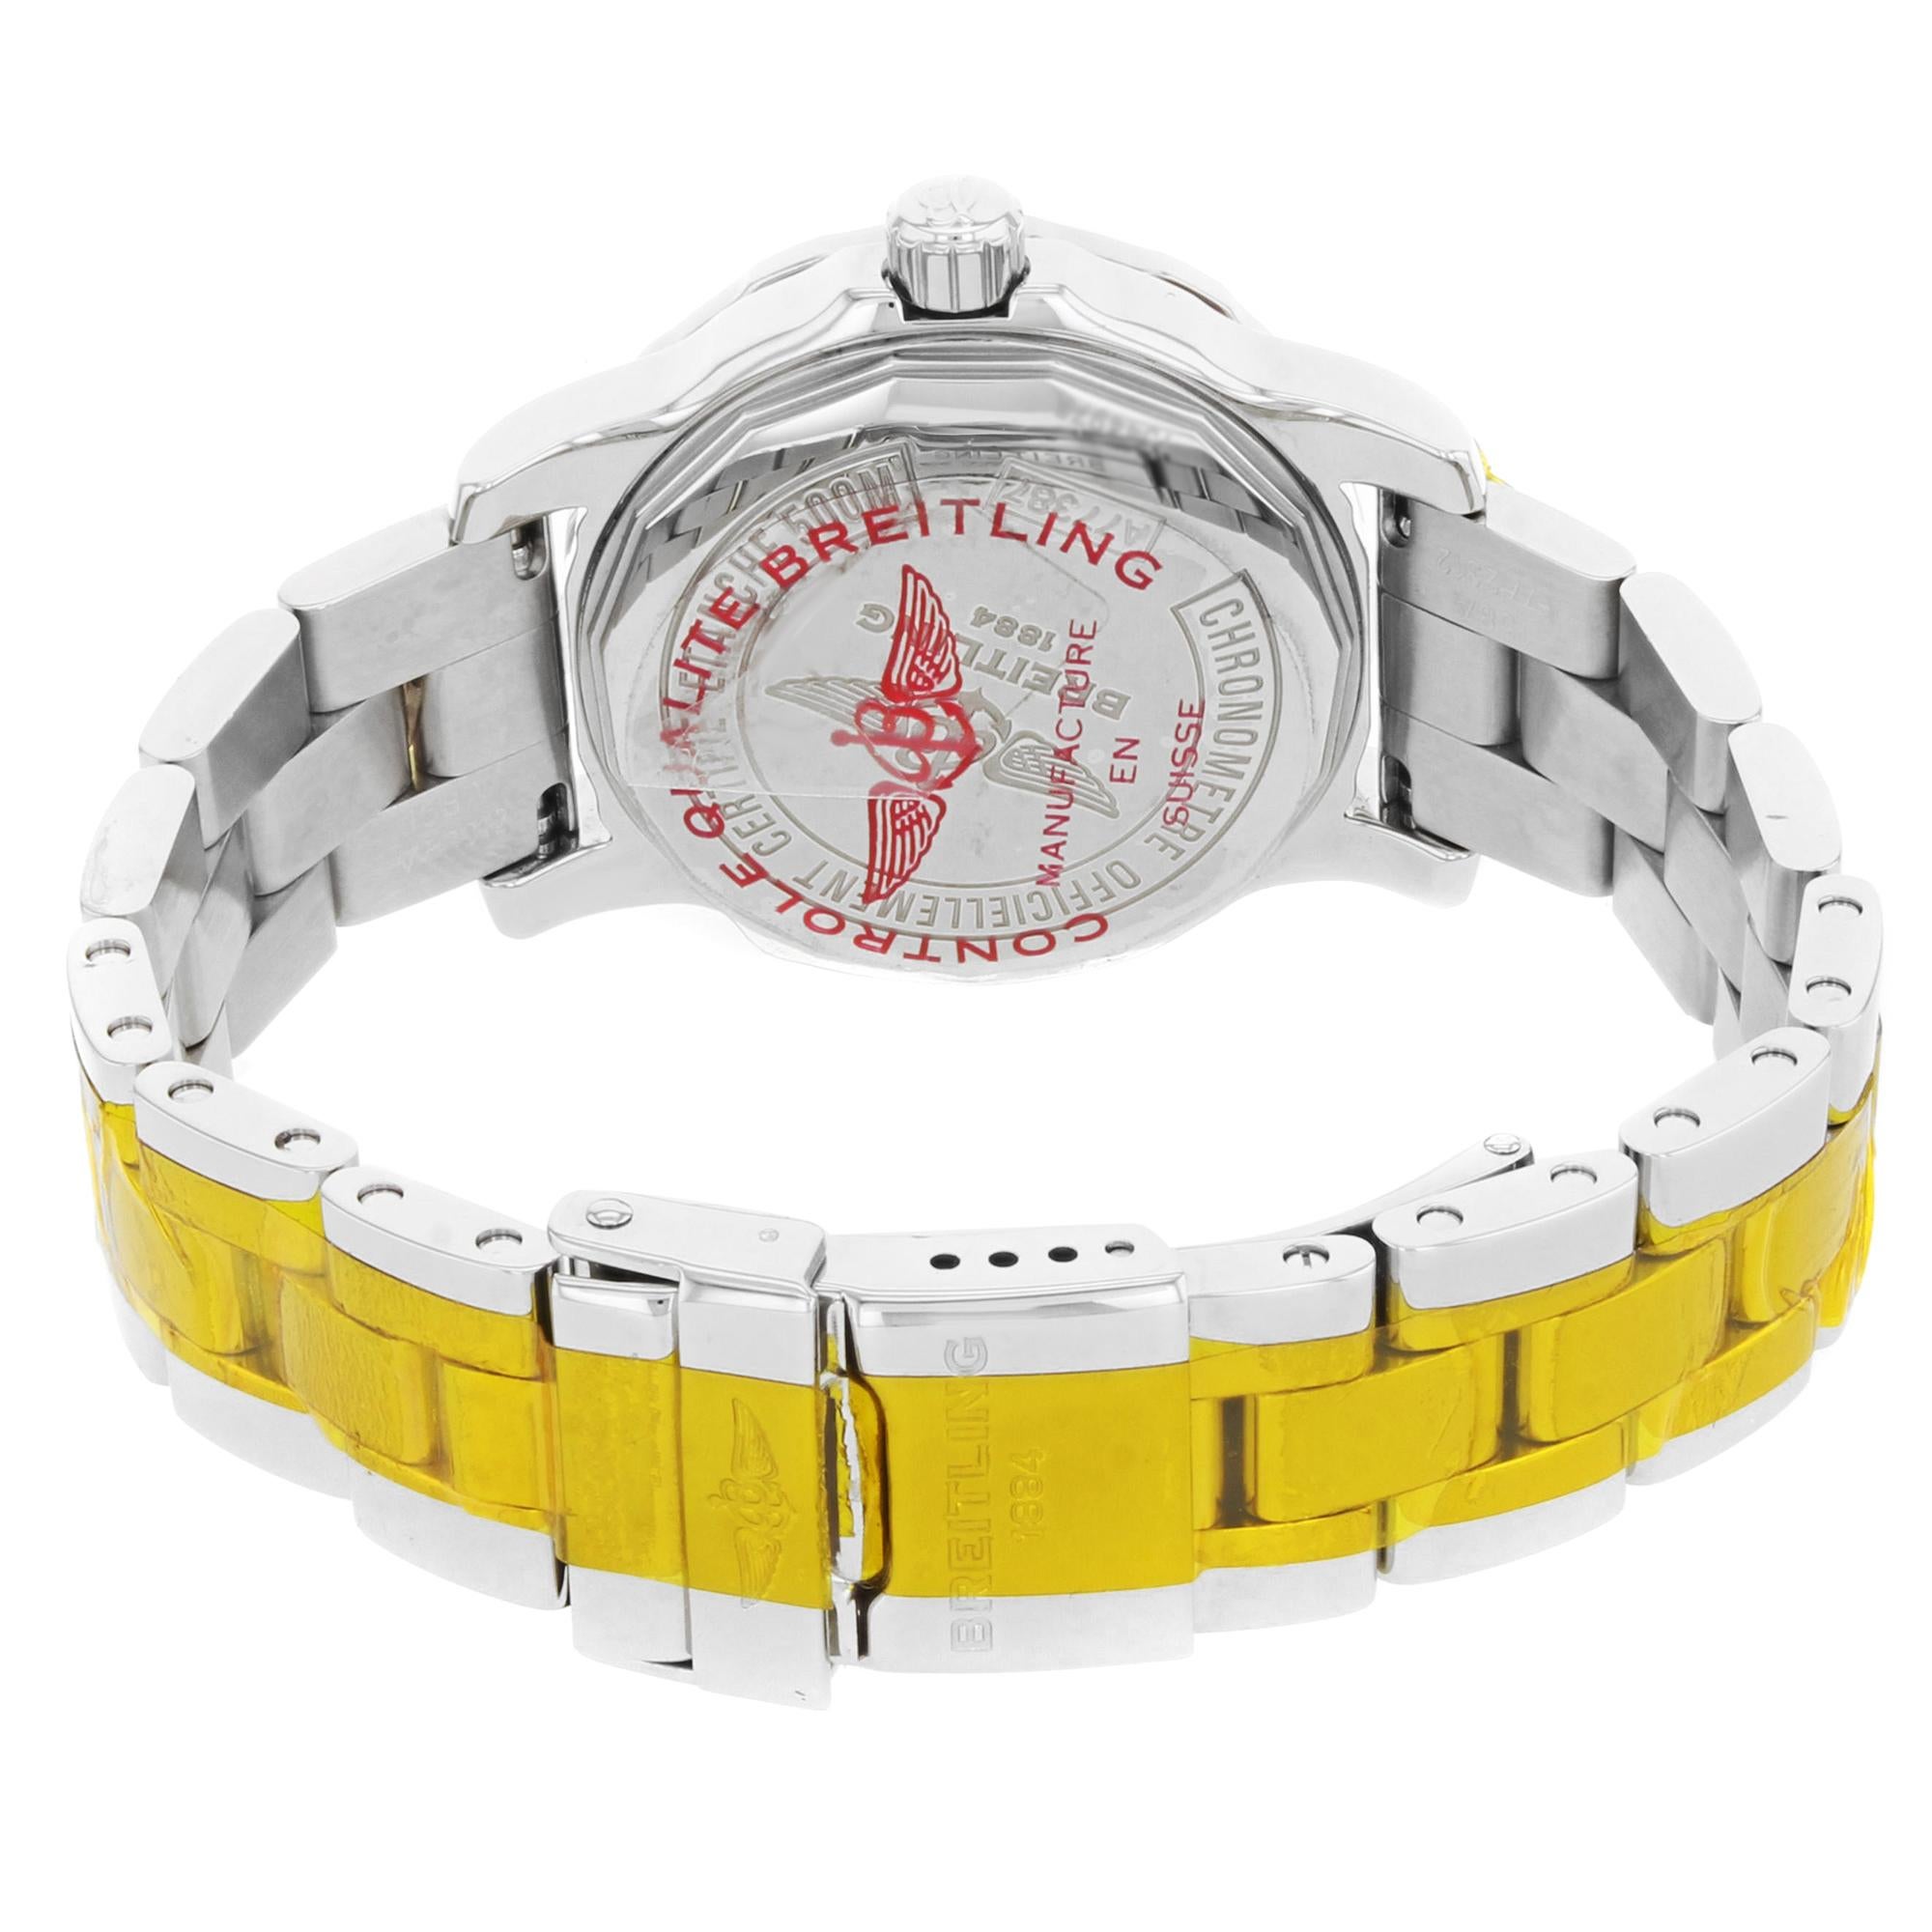 Breitling Colt 33 Black Dial Diamonds Ladies Quartz Watch A7738753/BB51-158A 1